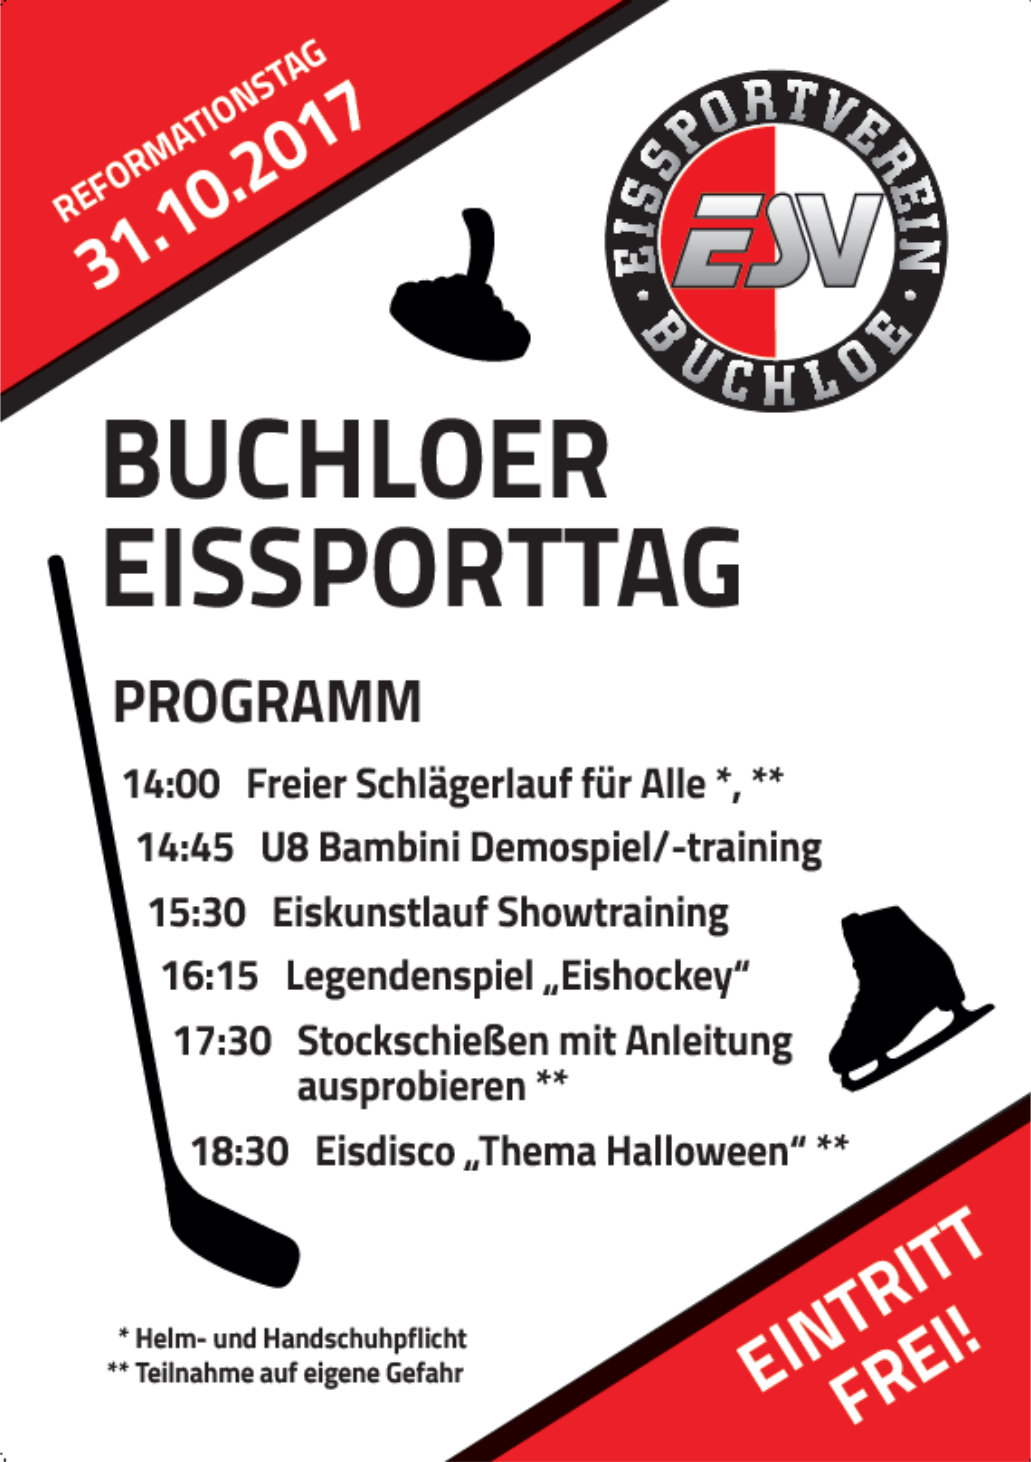 Buchloer Eissporttag 2017